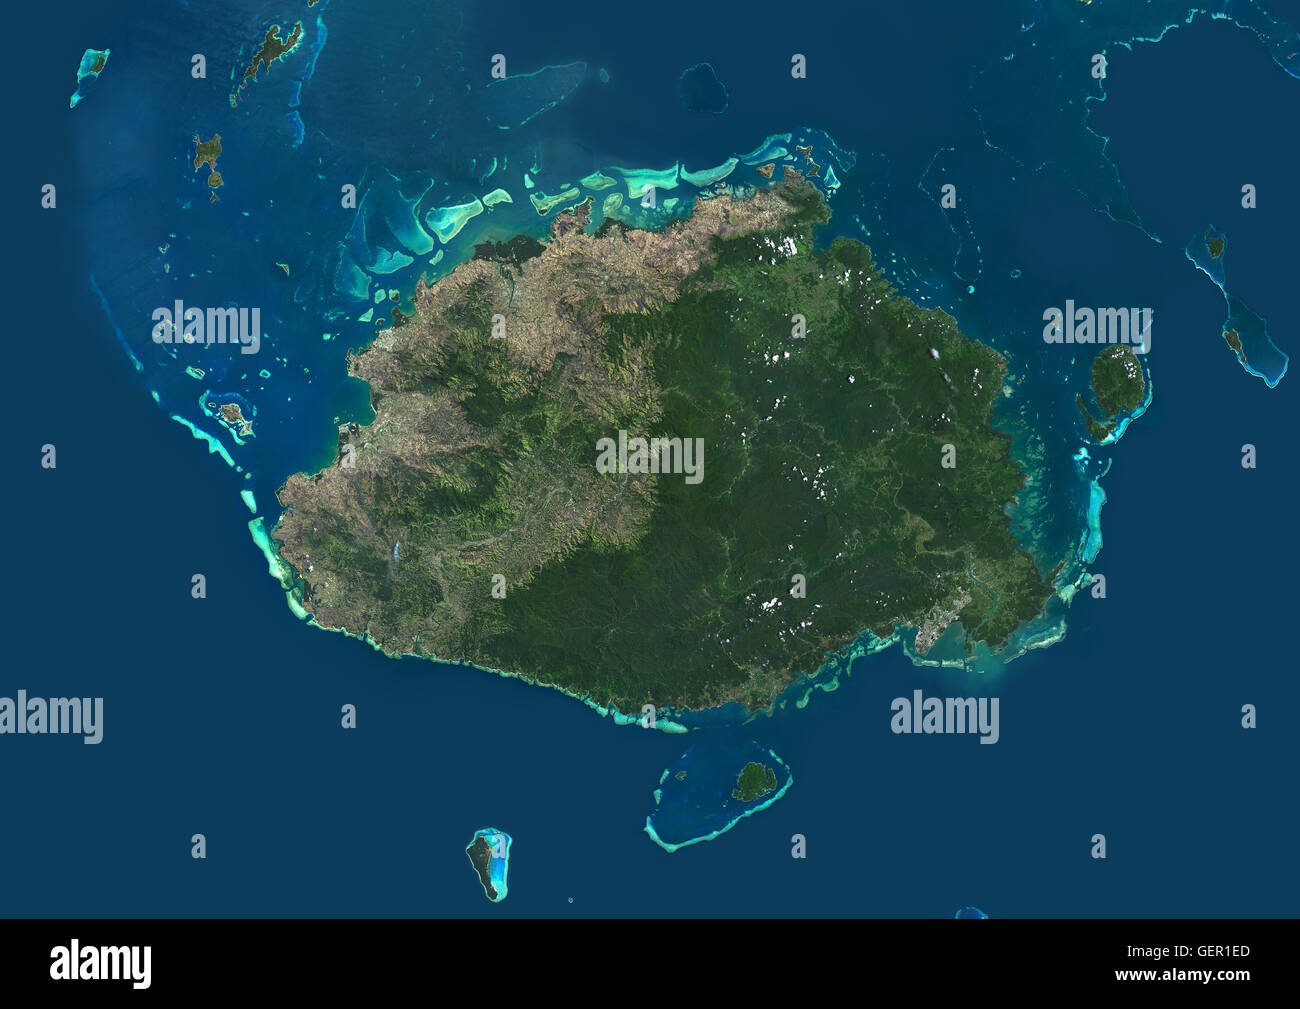 Vista satellitare dell'isola di Viti Levu, Fiji. Questa è la più grande isola della Repubblica delle Isole Figi e il sito della capitale della nazione, Suva. Questa immagine è stata elaborata sulla base dei dati acquisiti dal satellite Landsat 8 satellite in 2014. Foto Stock